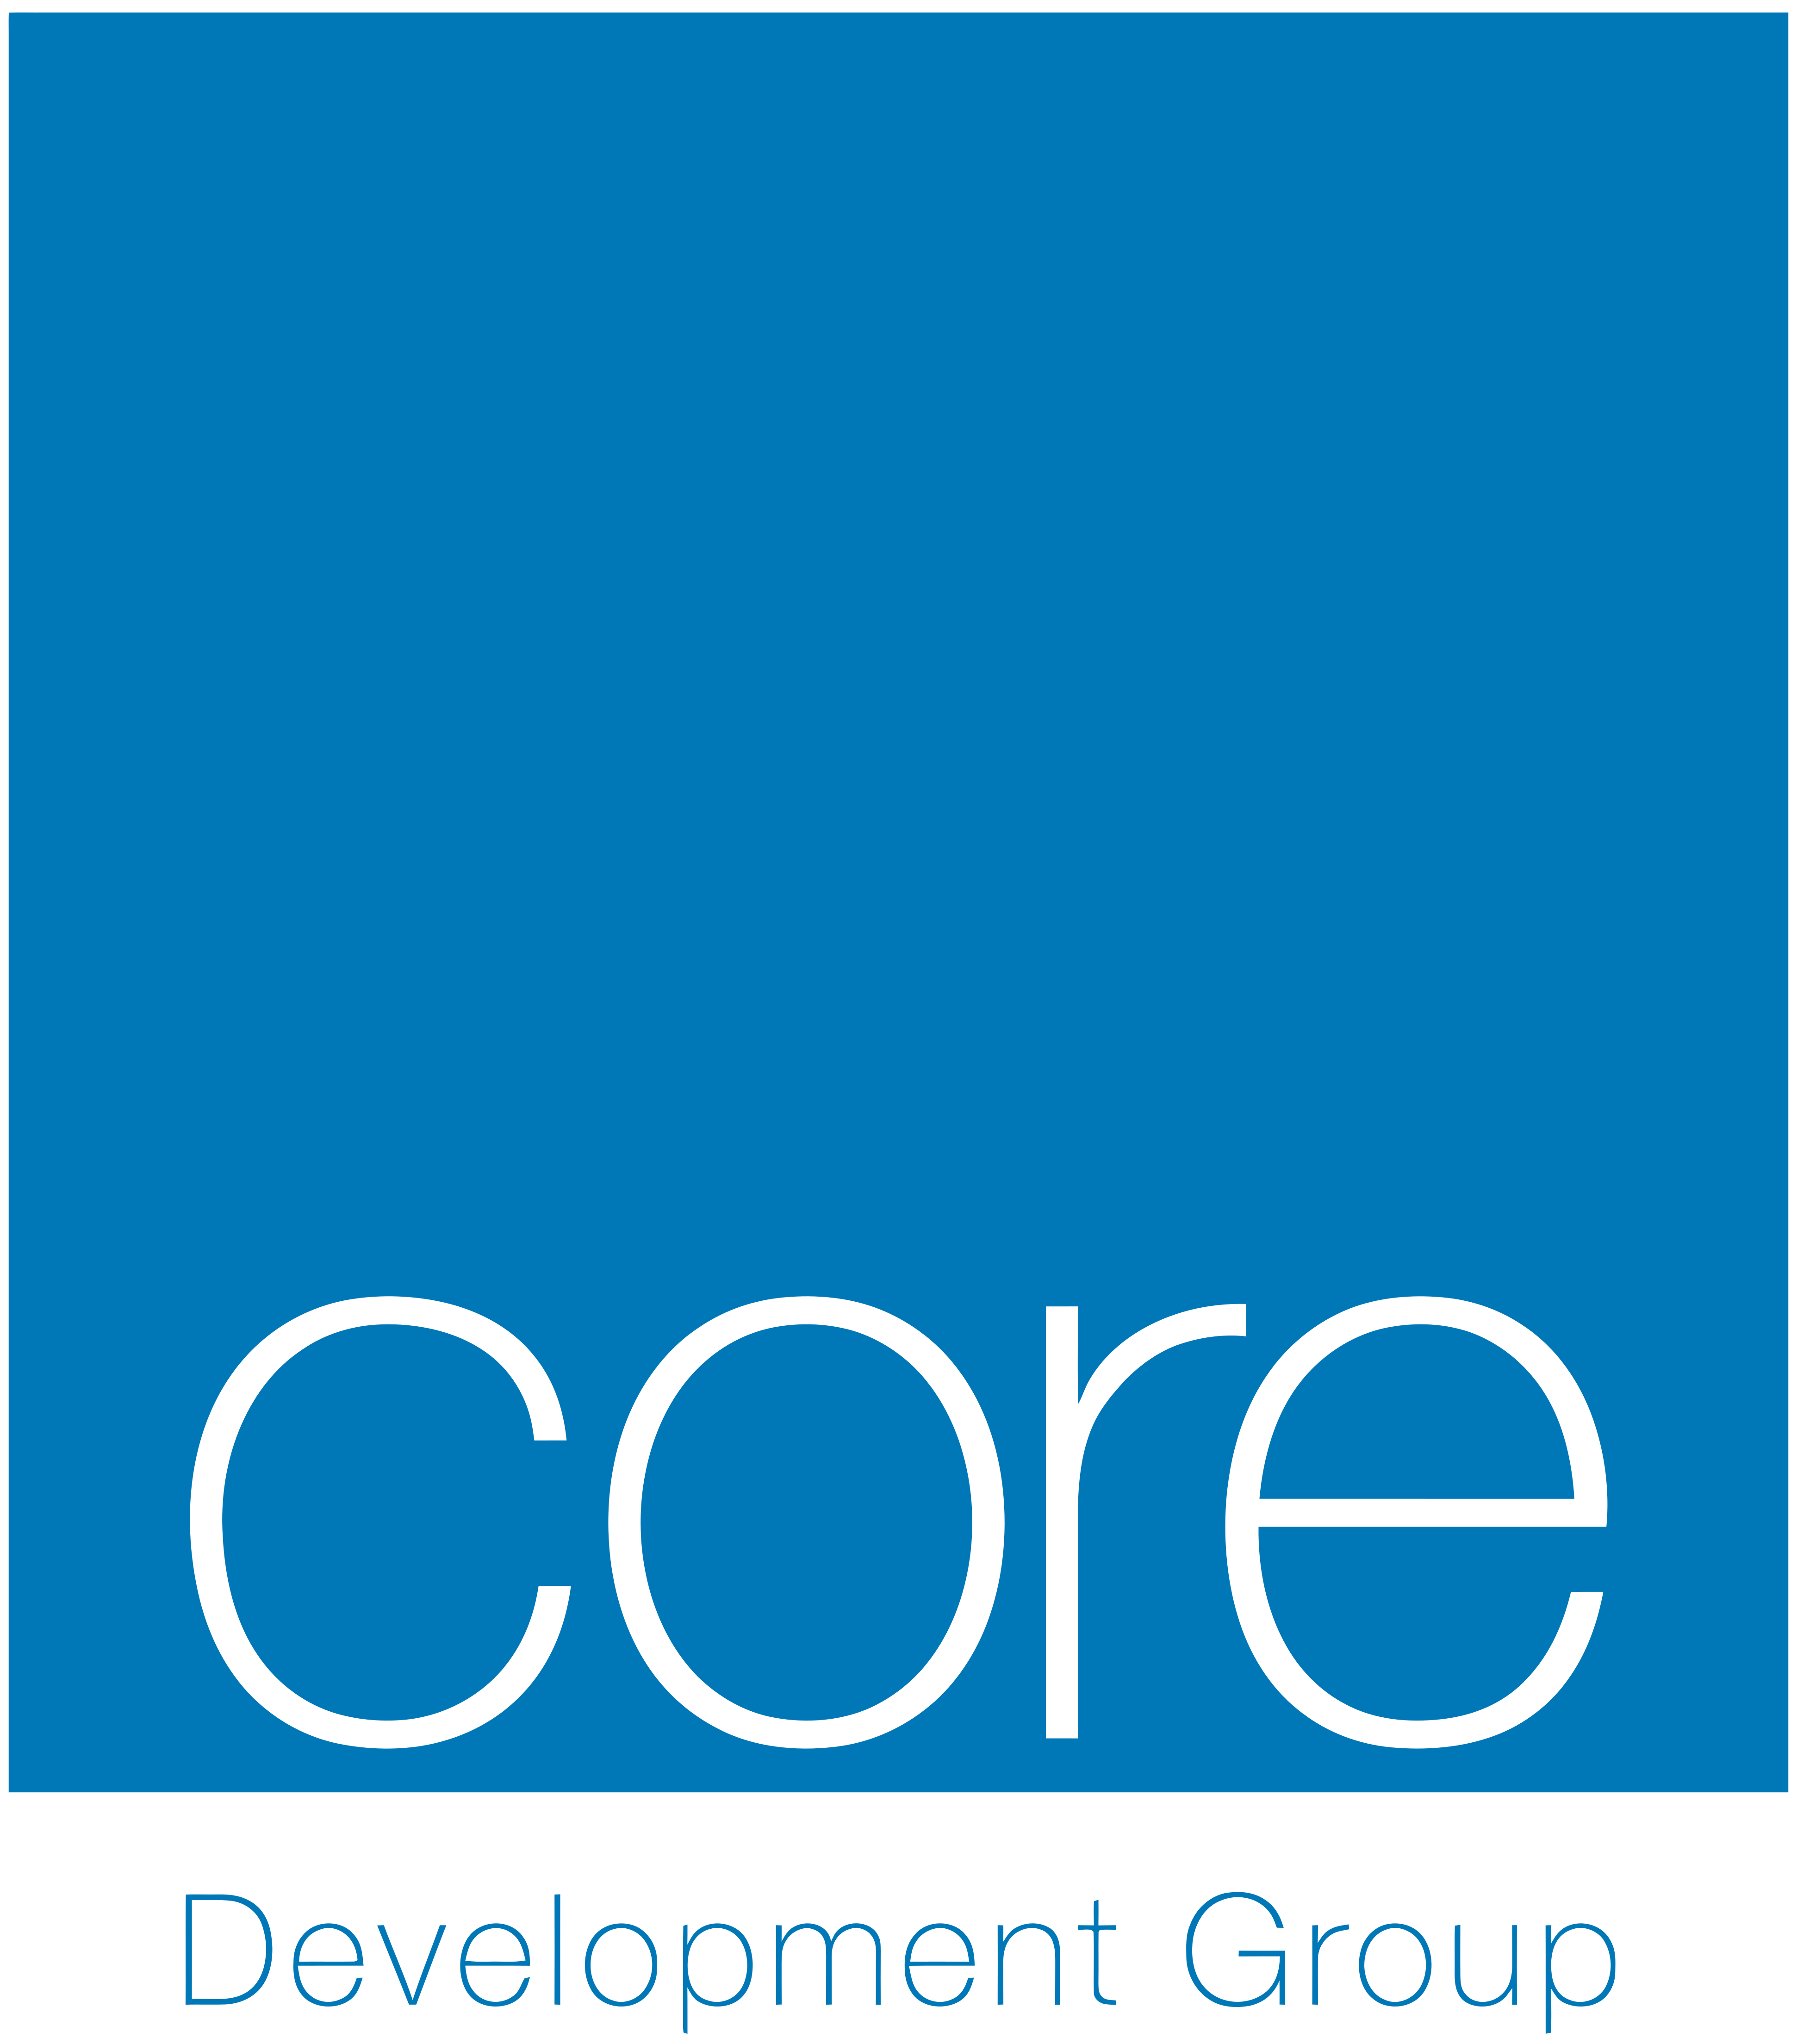 Core_Logo-_1_-min.png